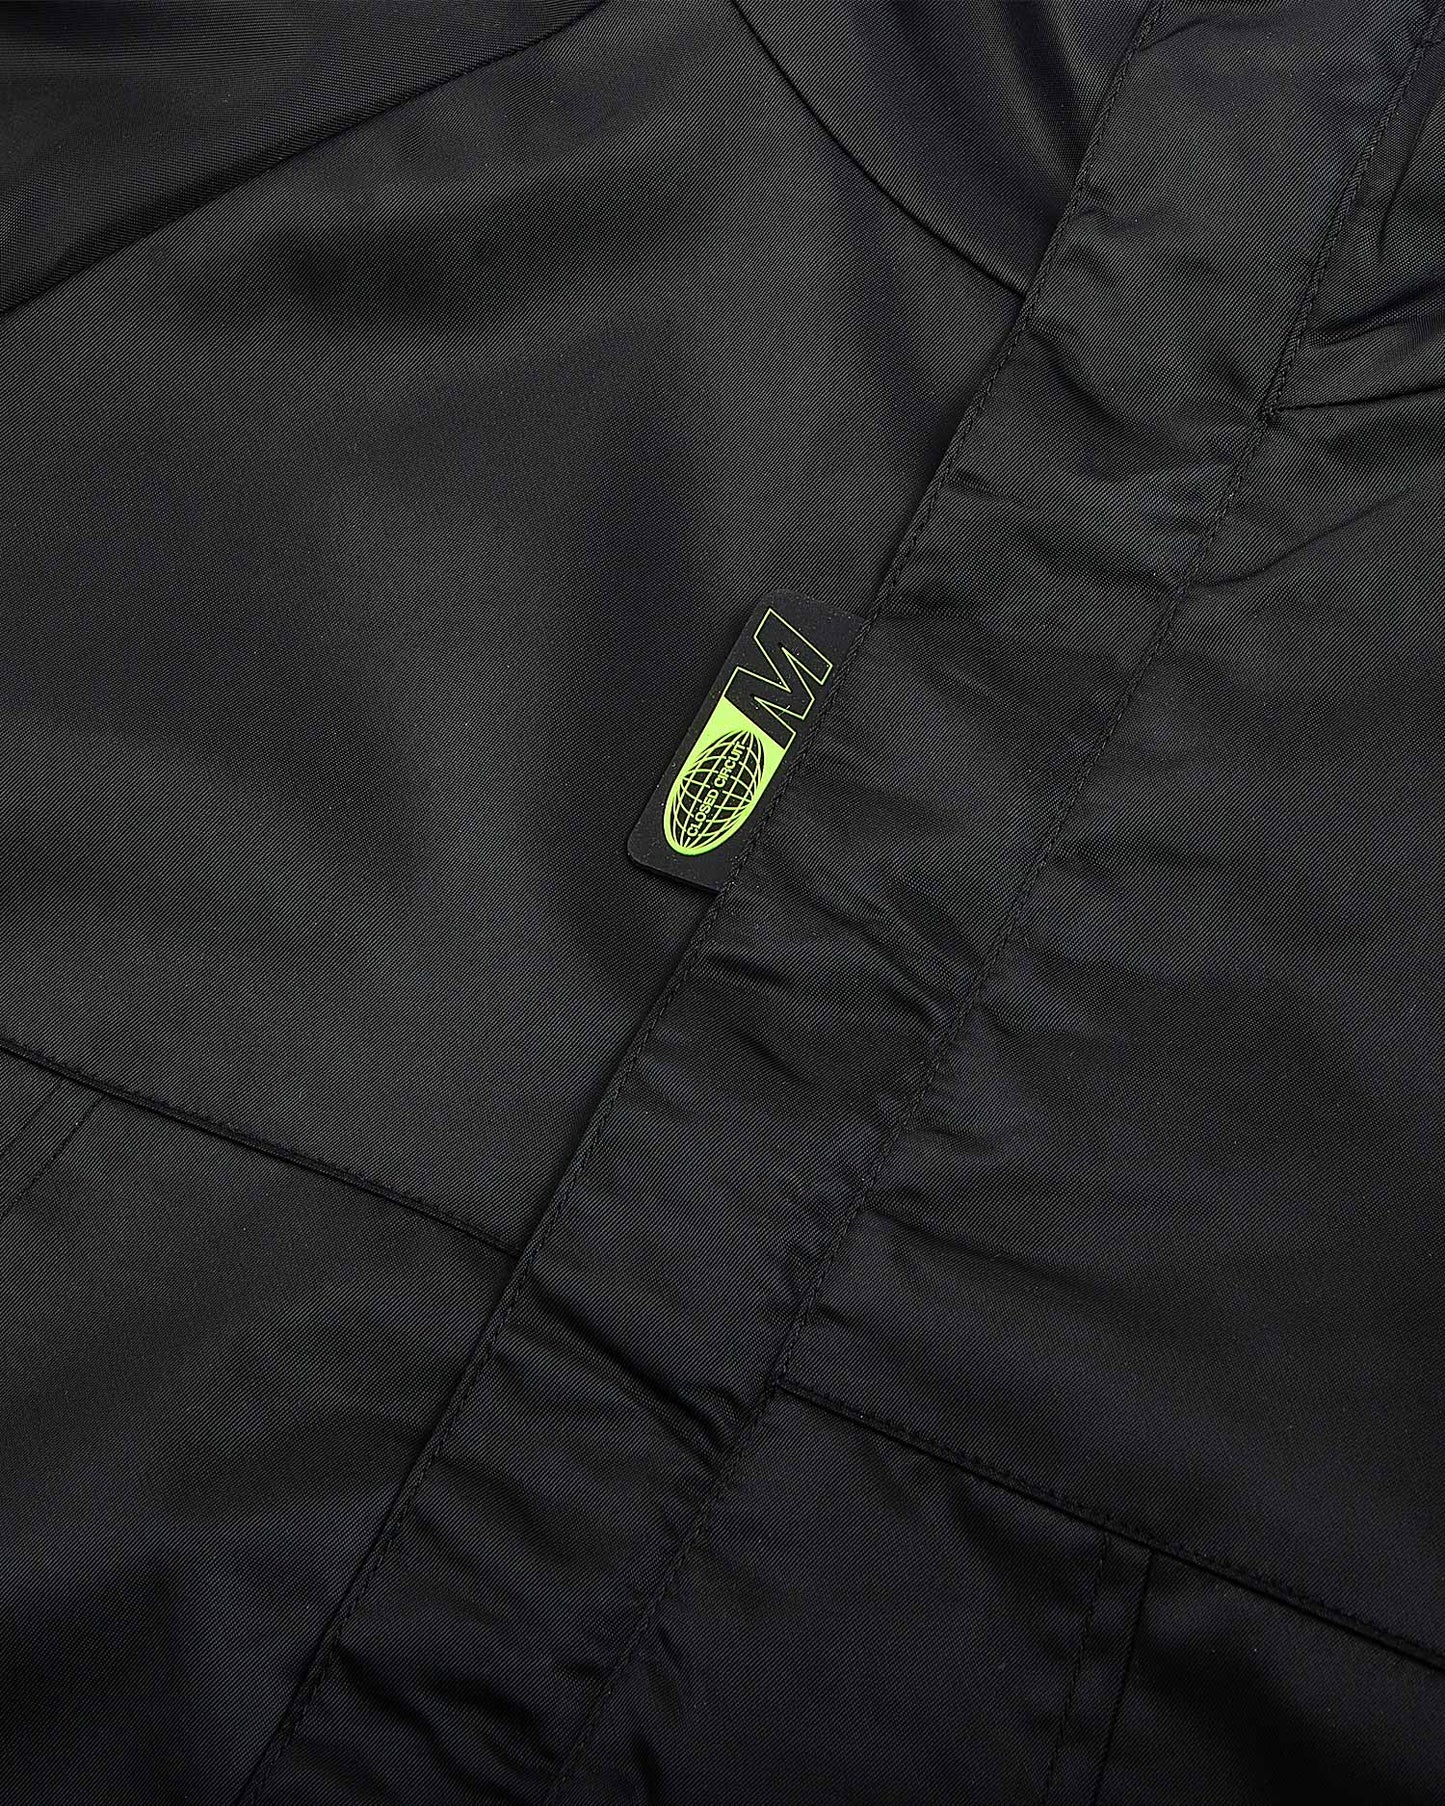 Black Nylon Jacket - mrcnoir